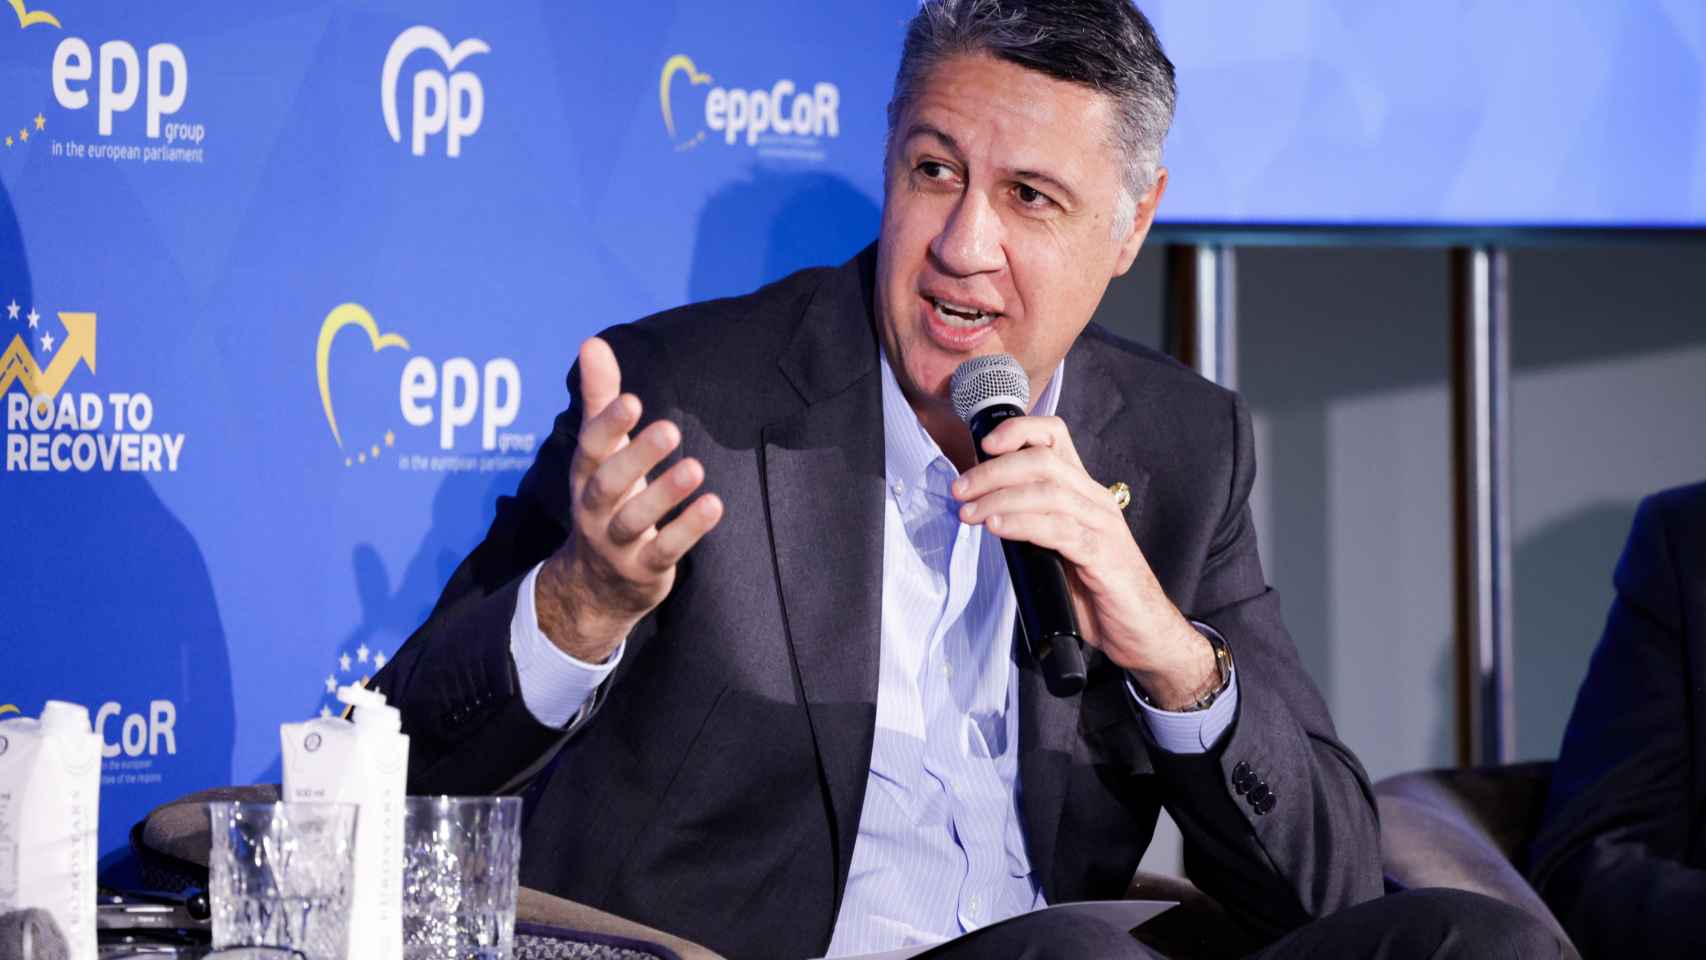 El alcalde de Badalona, Xavier García Albiol, interviene durante una conferencia del Partido Popular Europeo, en el Hotel Grand Marina